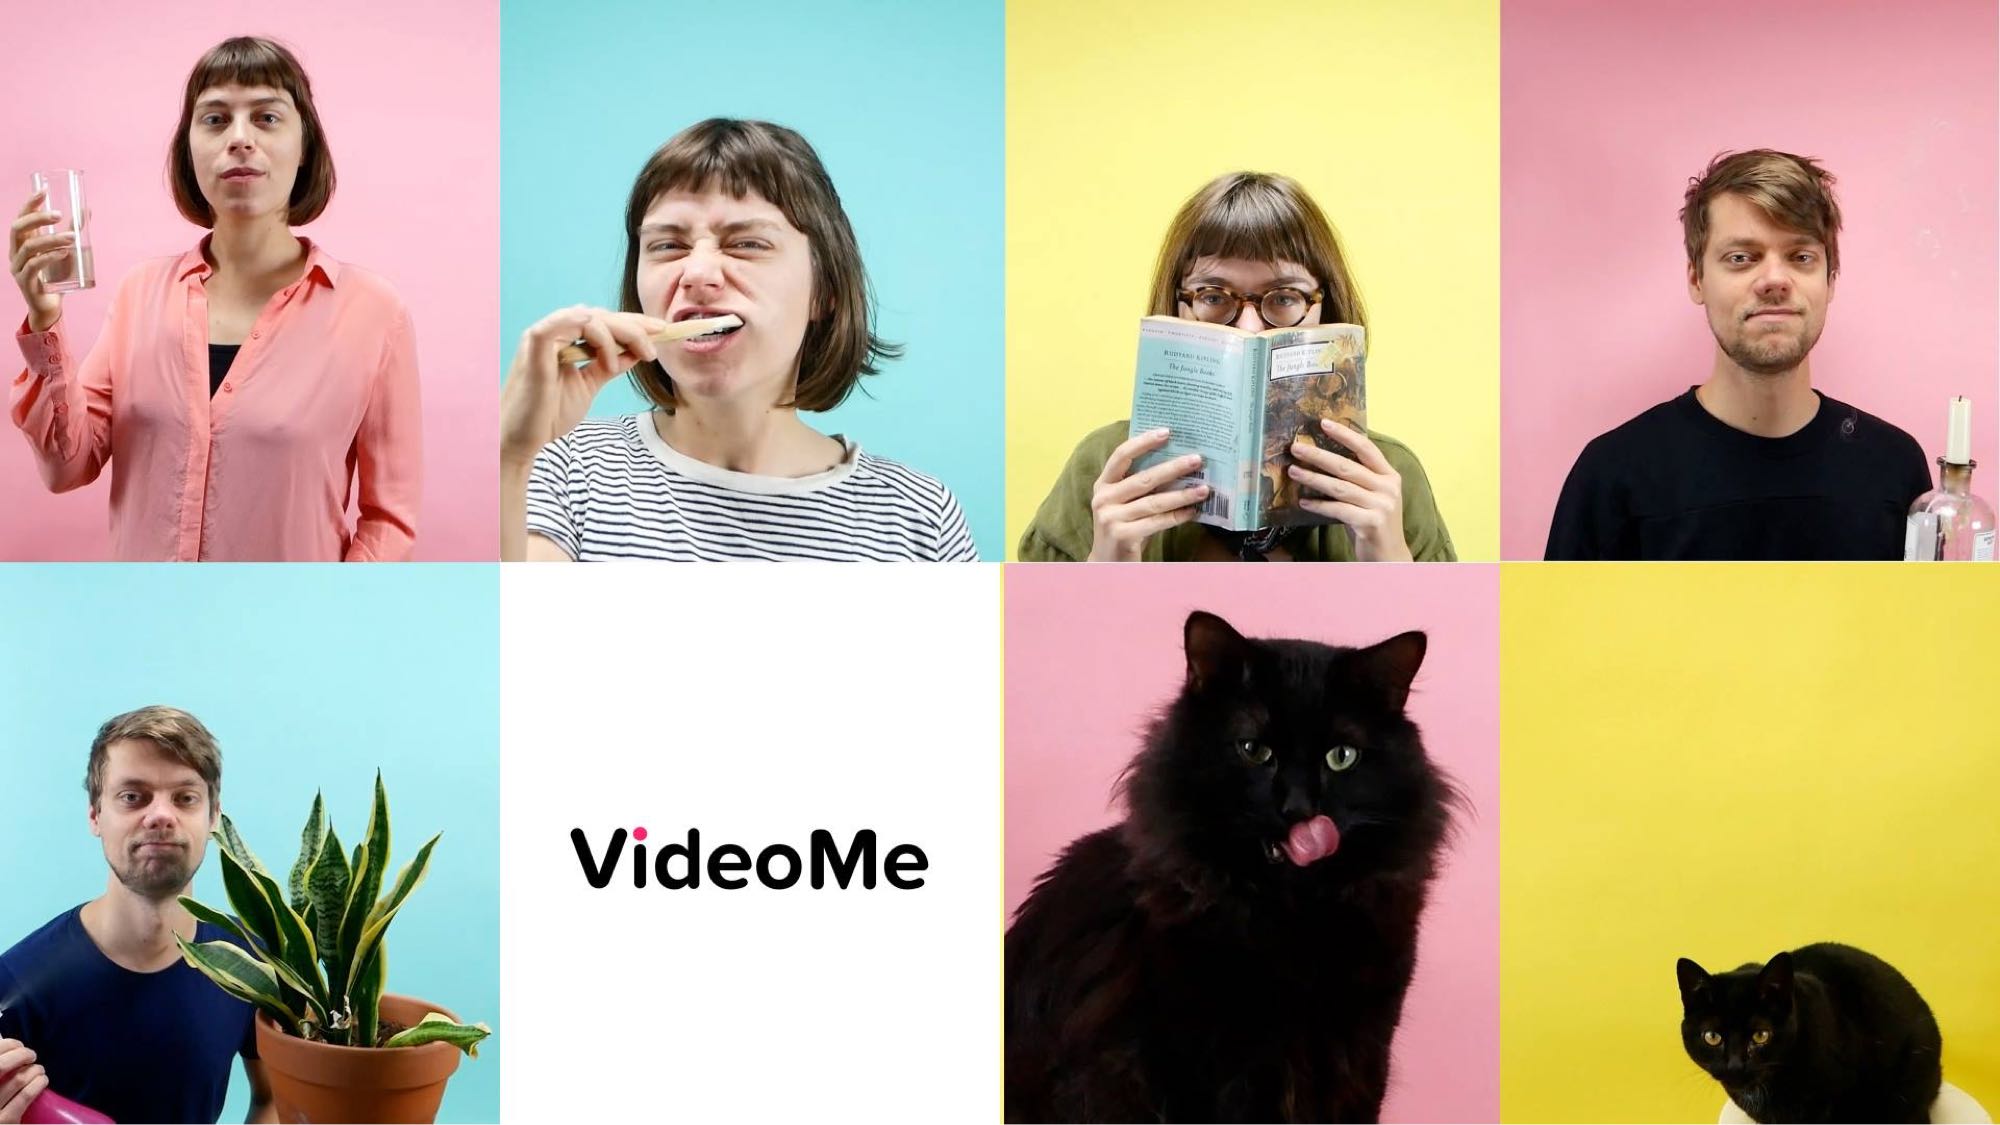 VideoMe campagne 2019, creatief branding agency, videoproductie. waarde video content maken